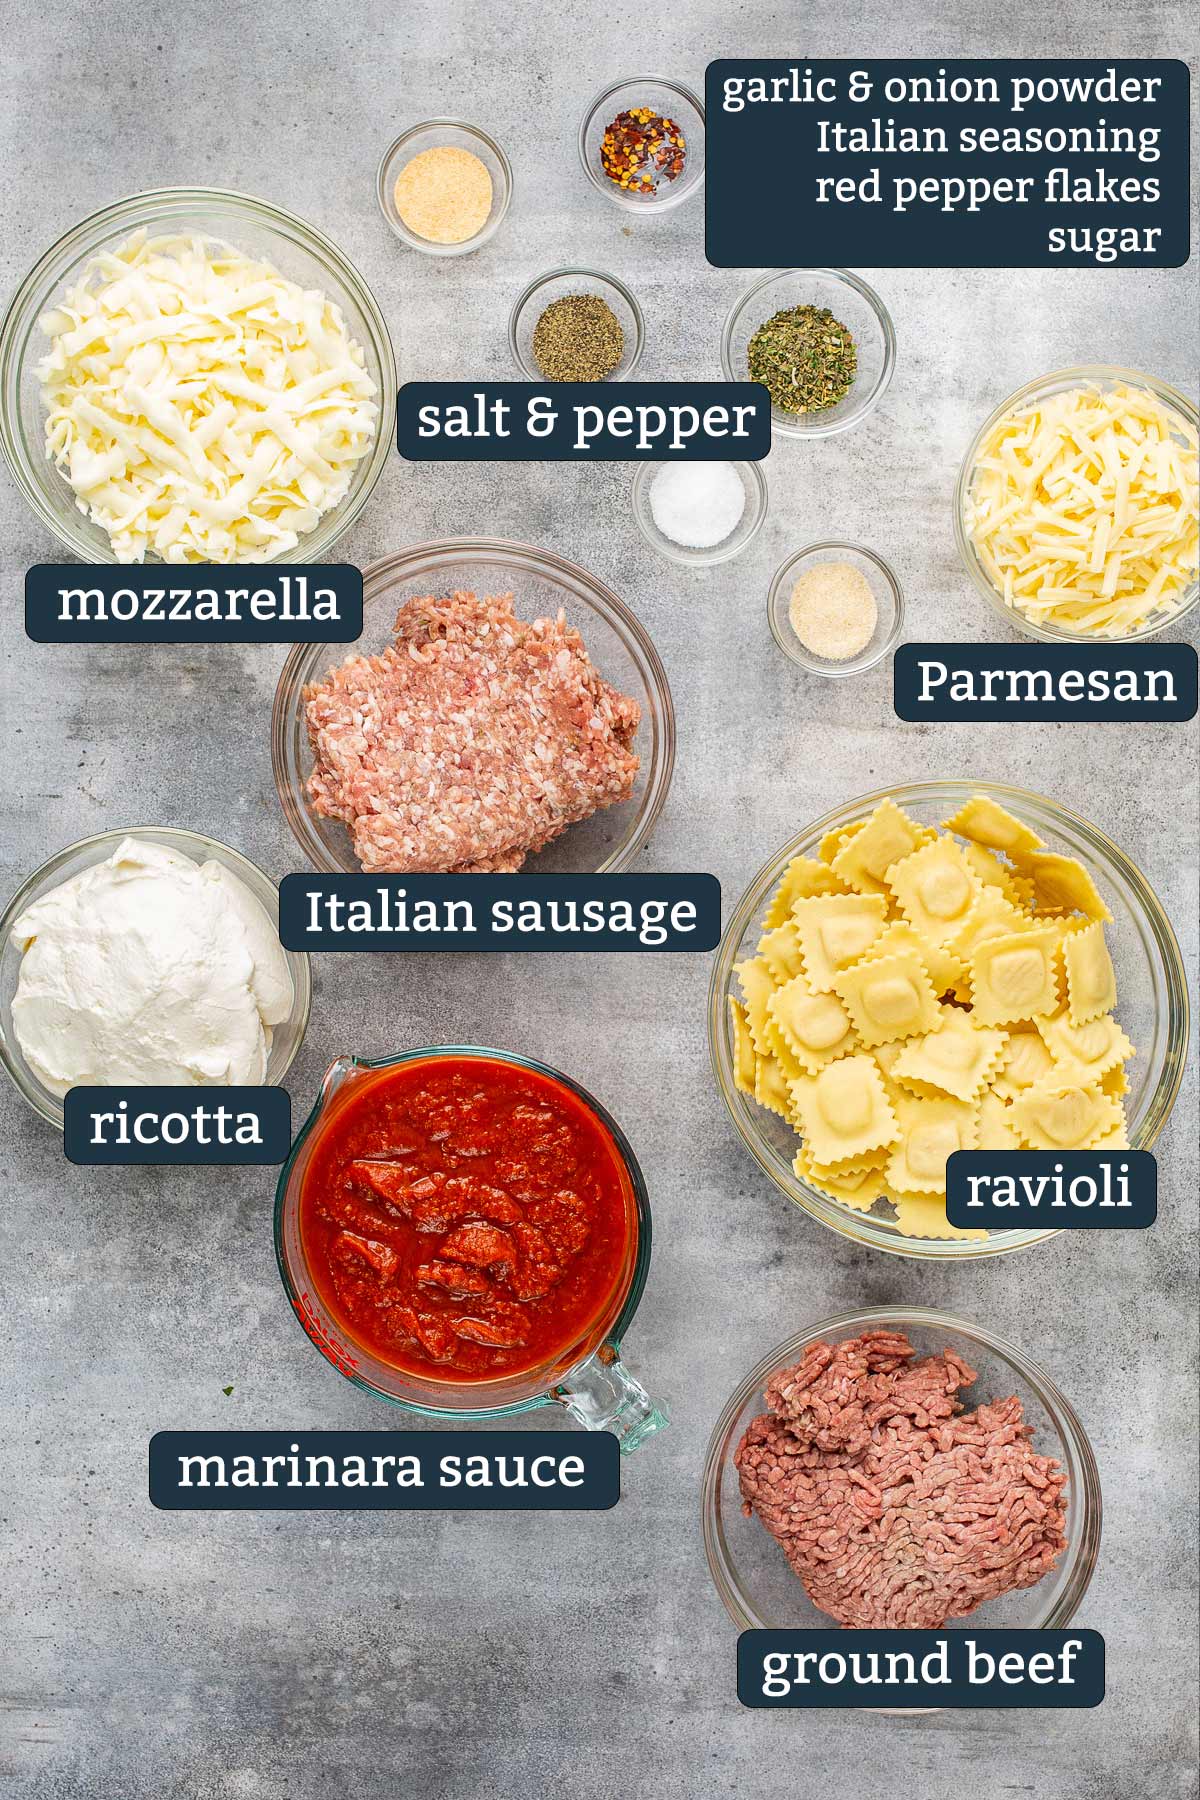 Ingredients to make ravioli lasagna bake in prep bowls.